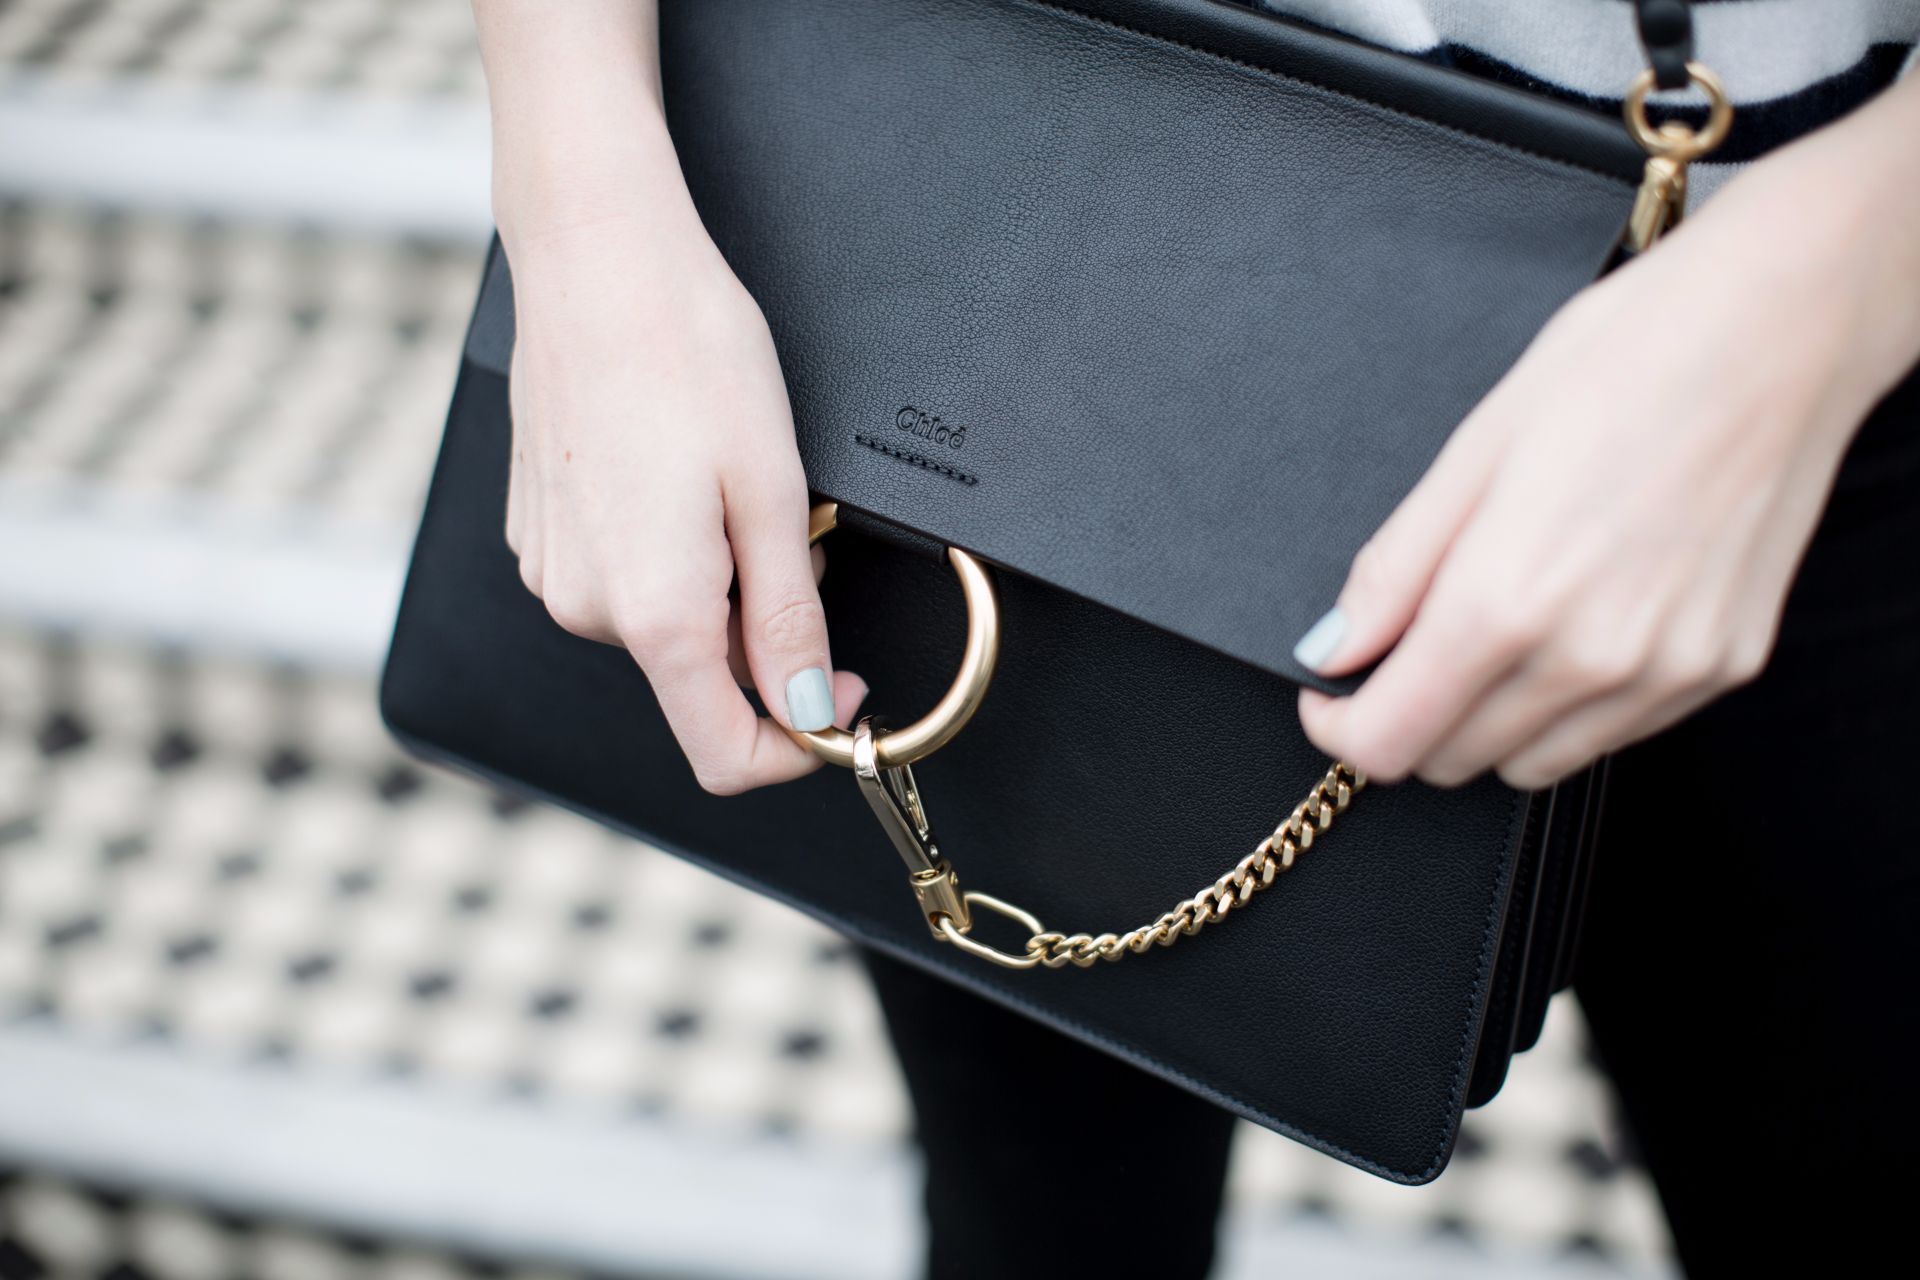 CHLOE Handbag Strap in Black